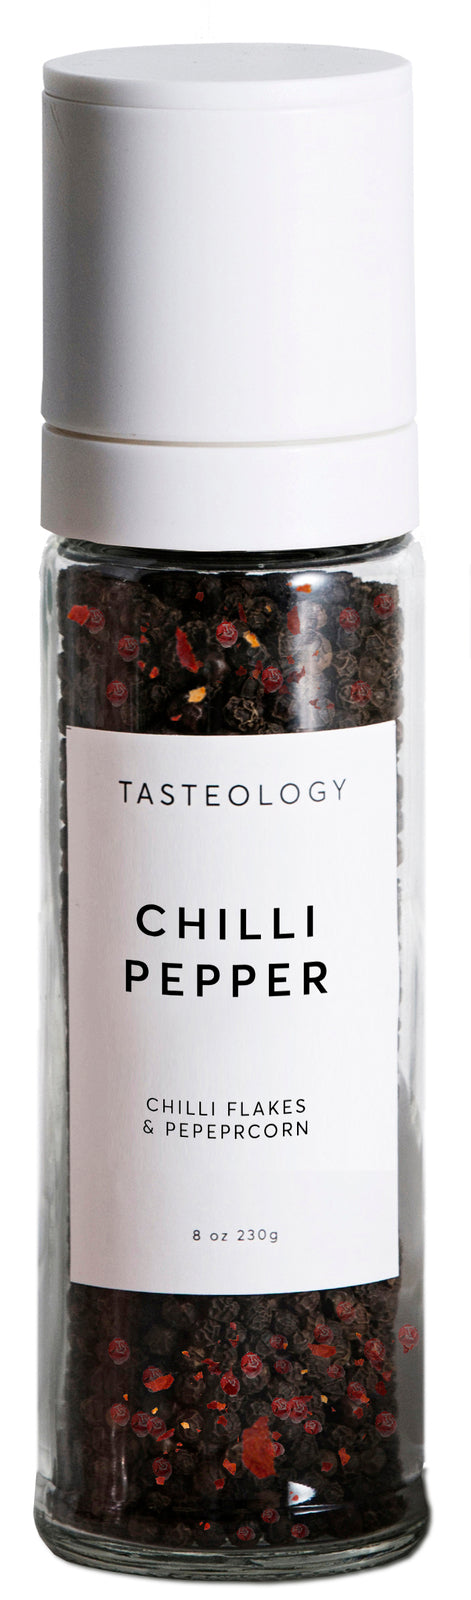 Tasteology - Chilli Pepper